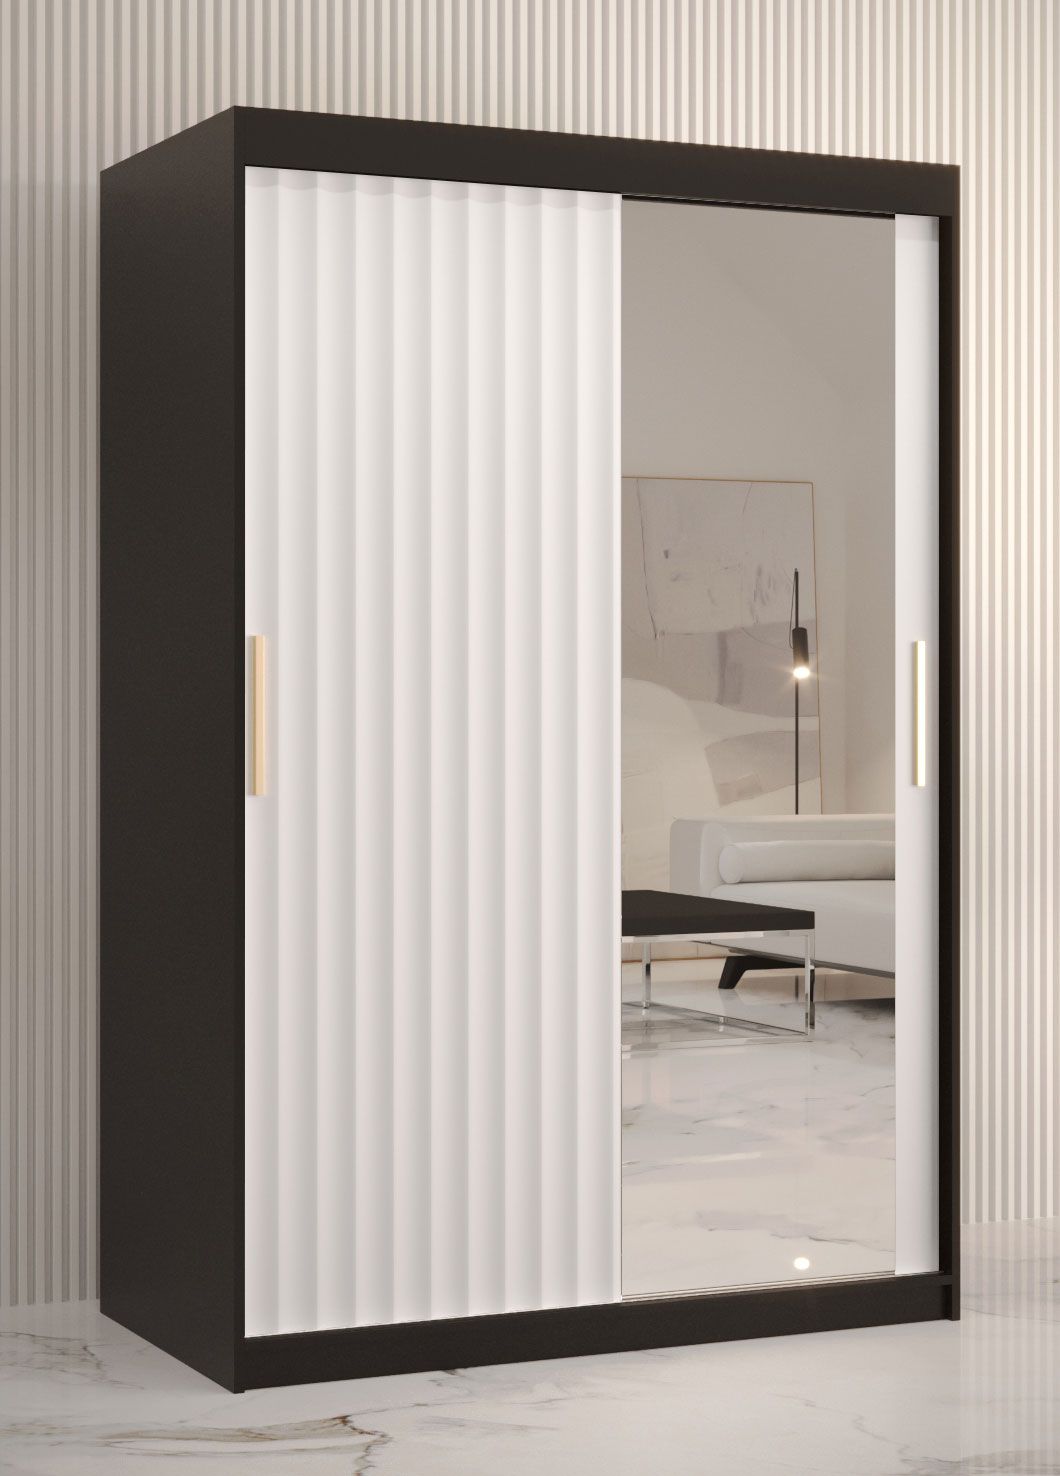 Kledingkast met strak design Balmenhorn 79, kleur: mat zwart / mat wit - afmetingen: 200 x 120 x 62 cm (H x B x D), met één deur met spiegel